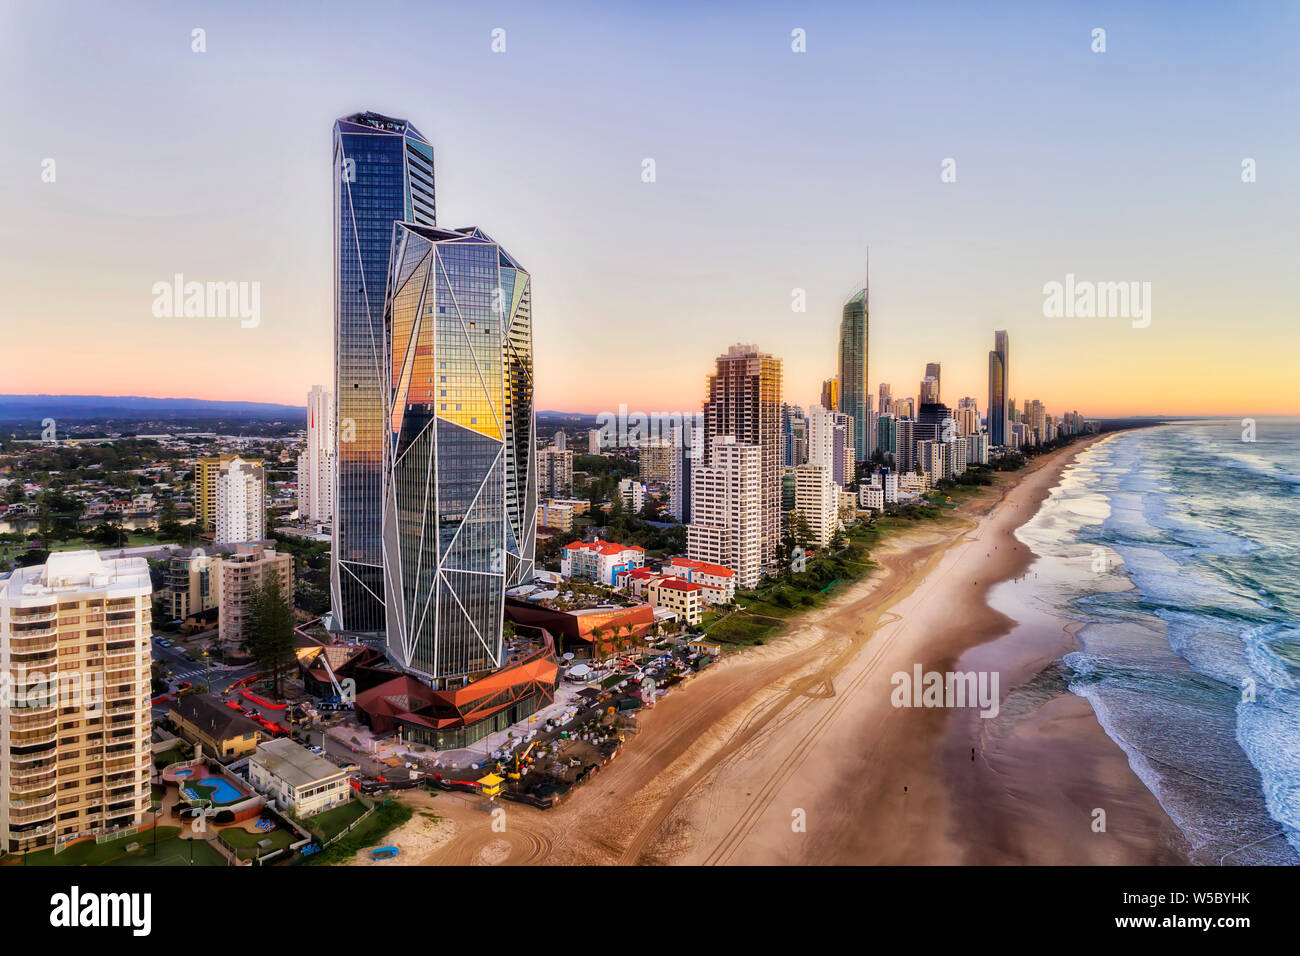 La arquitectura moderna de rascacielos en la costa del océano Pacífico sobre amplia y larga playa de arena, Surfers Paradise, en la Costa de Oro australiana. Foto de stock